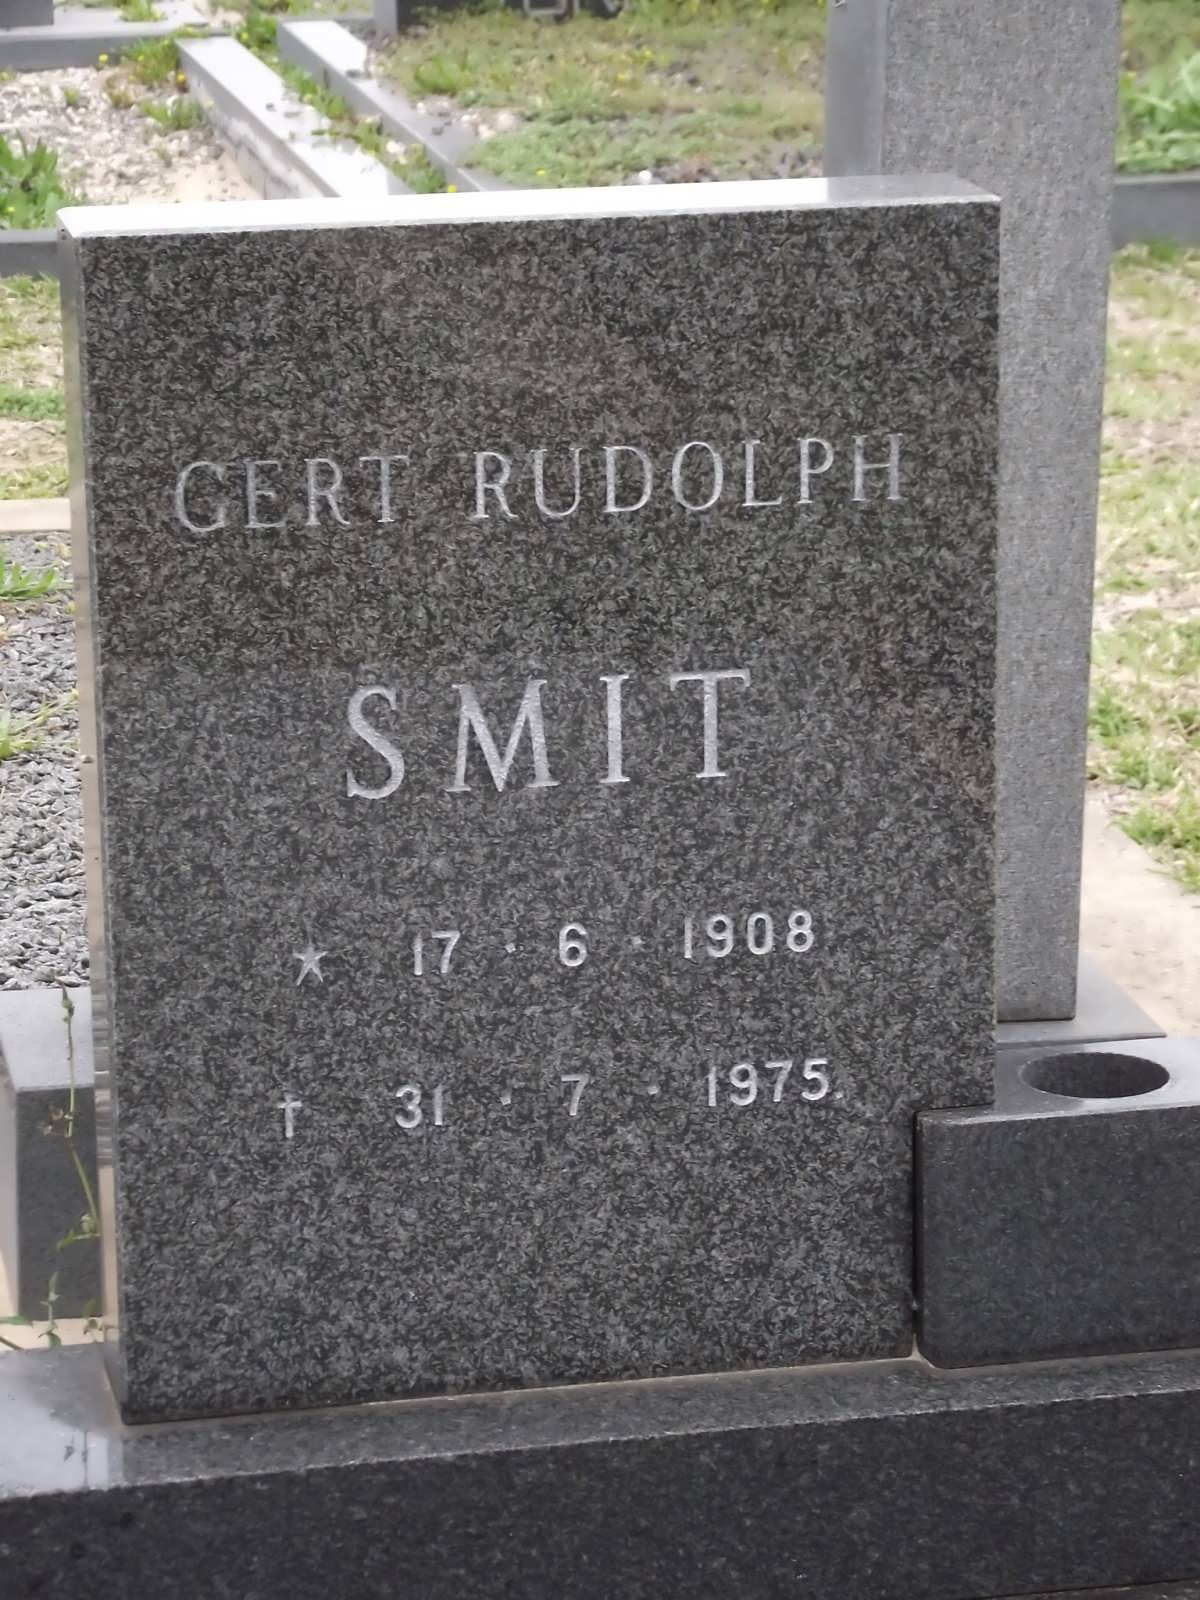 SMIT Gert Rudolph 1908-1975